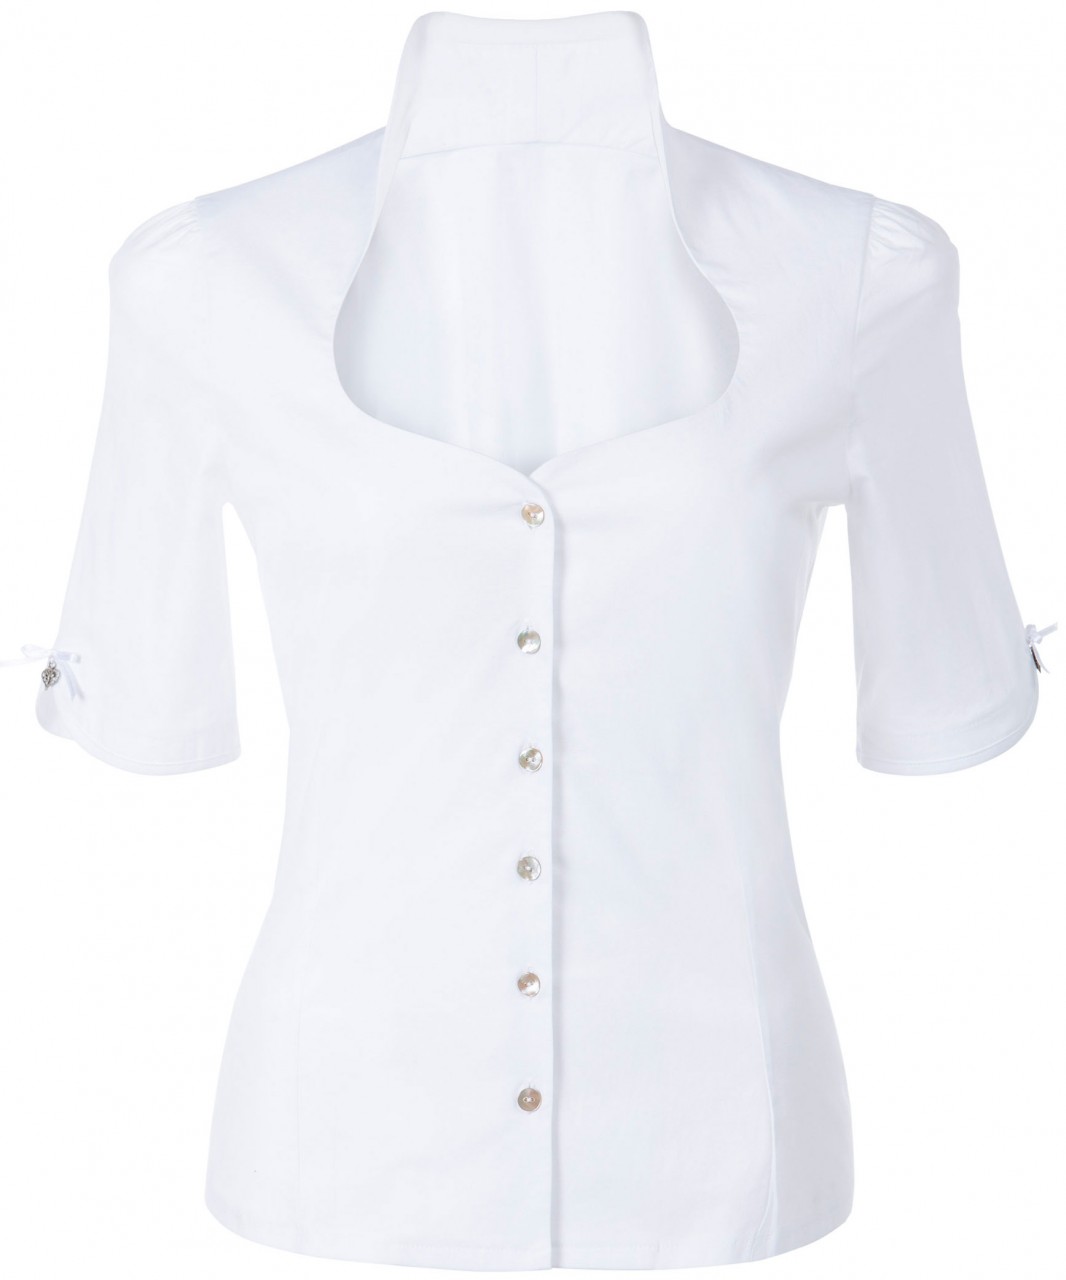 Voorvertoning: Trachten blouse Priscilla wit